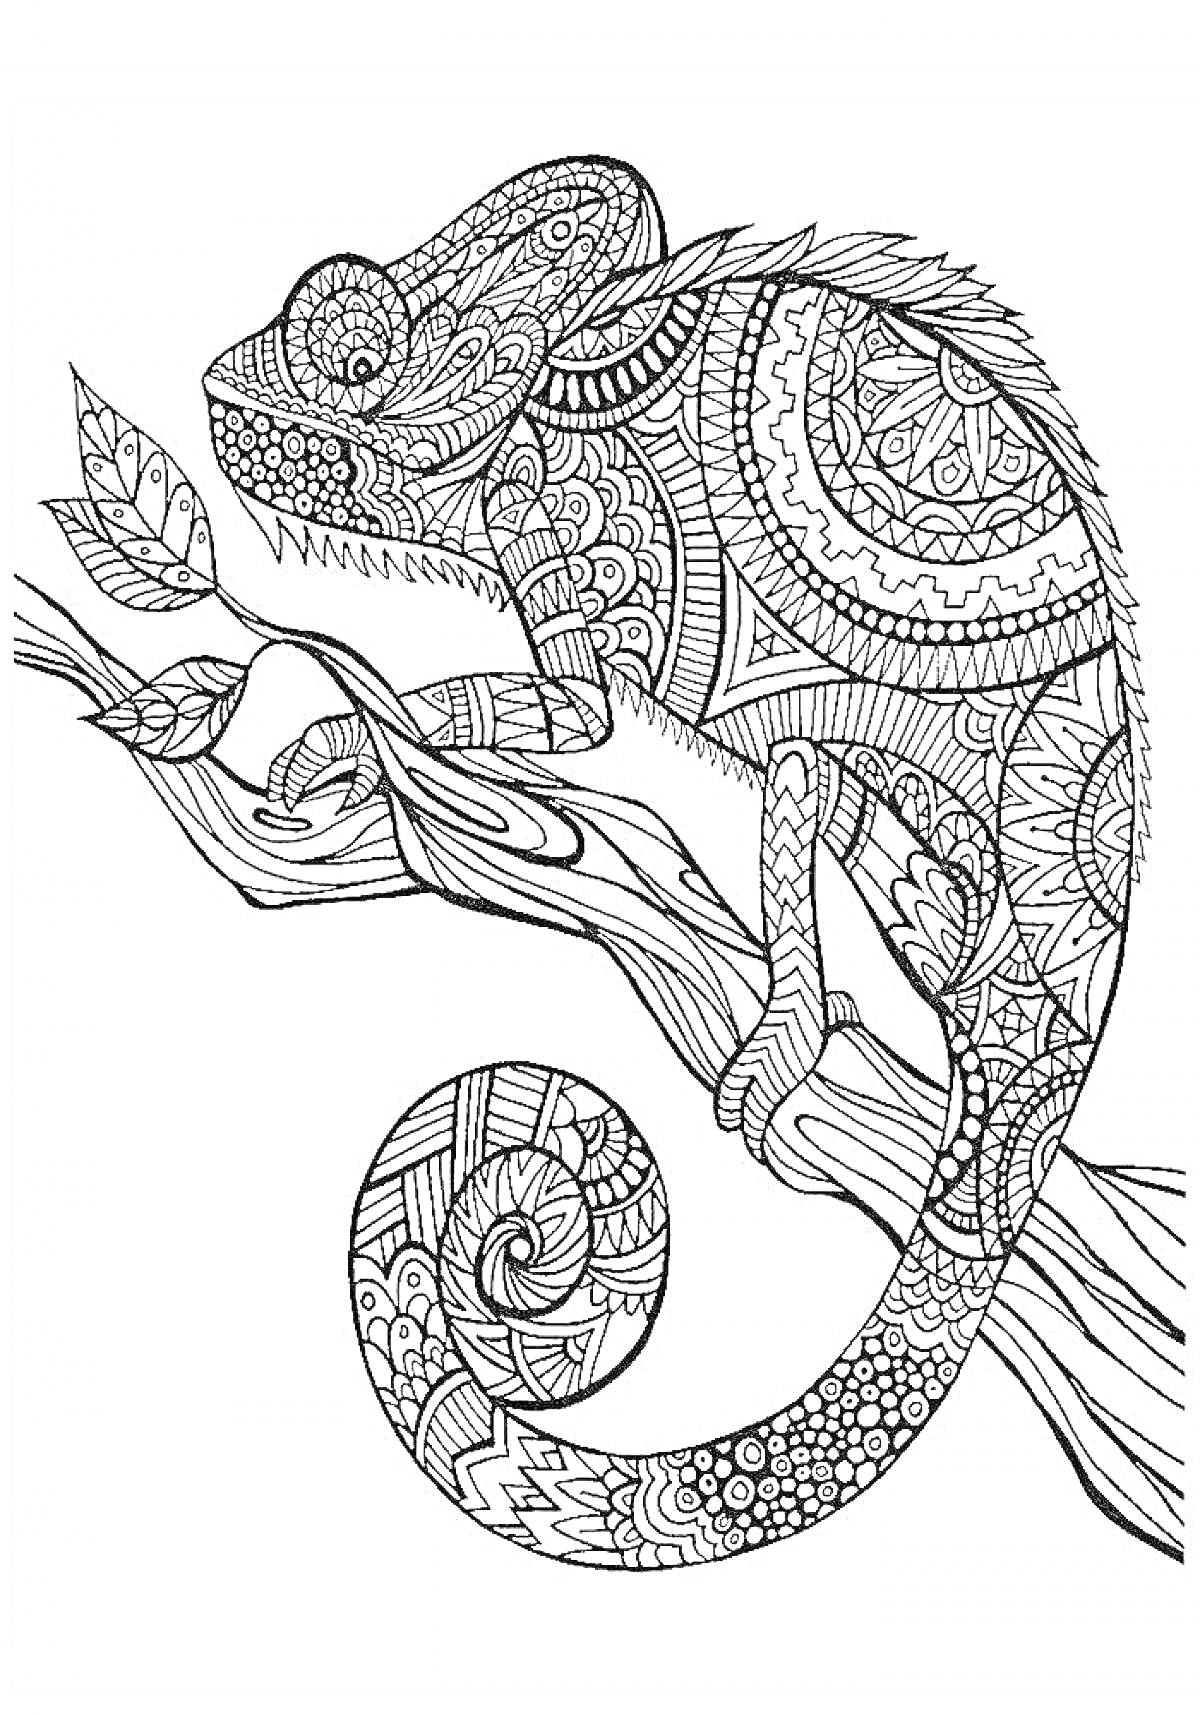 Раскраска Хамелеон на ветке с детализированным орнаментом